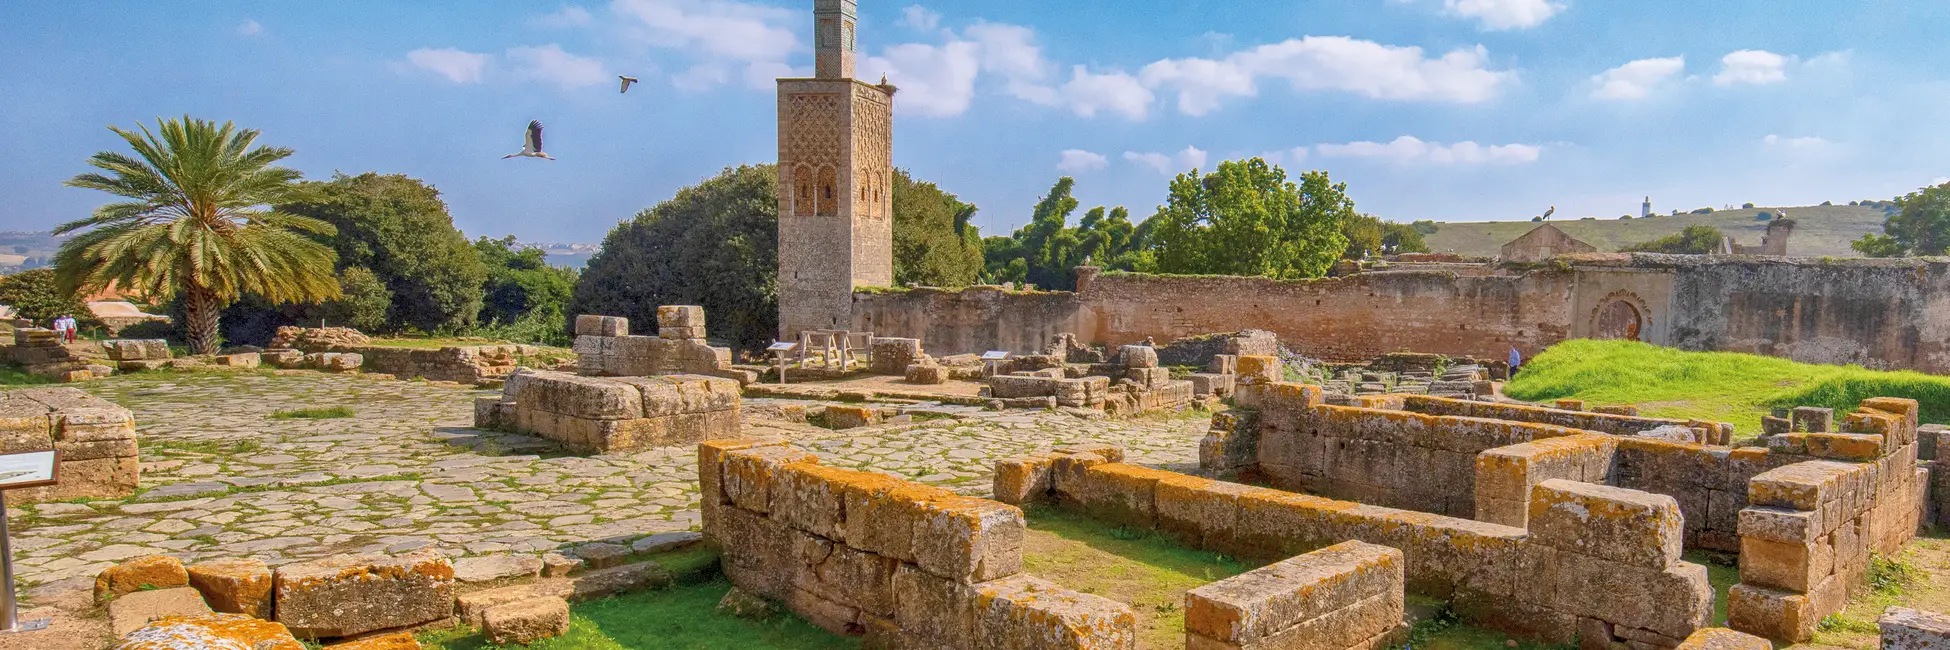 Site nécropole de Chellah à Rabat 